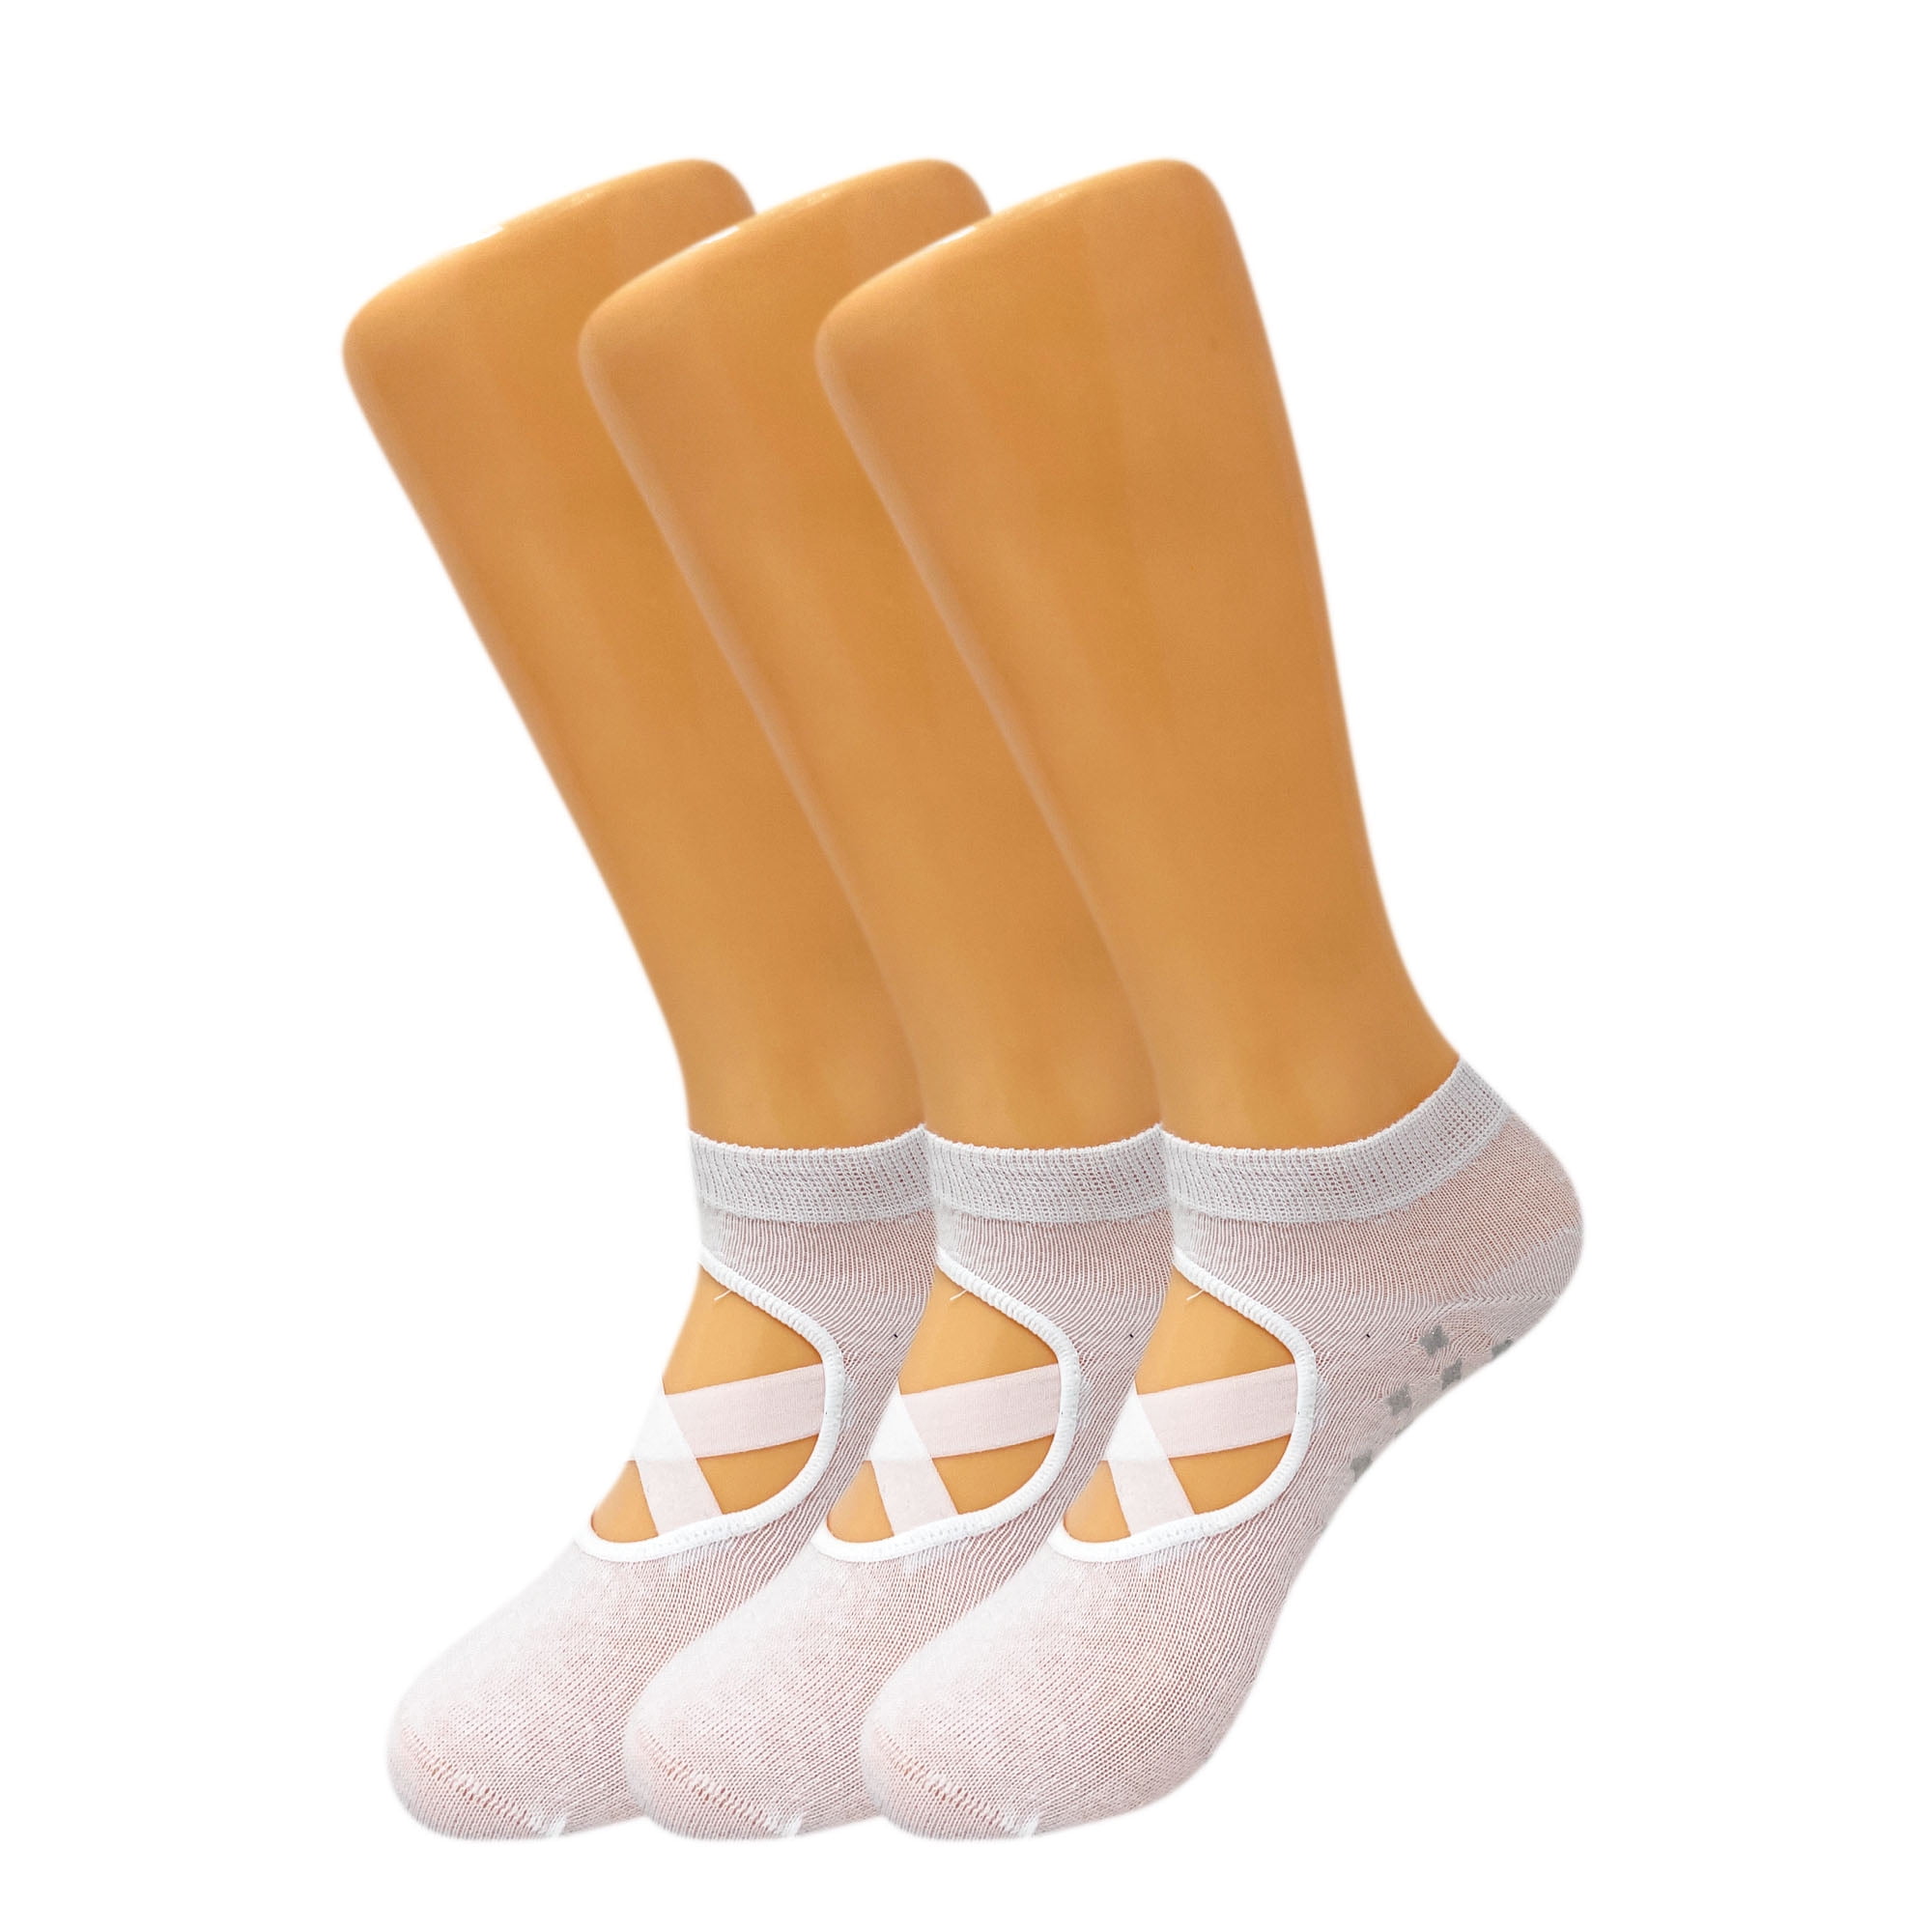 Buy FLORISCA Yoga Socks for Women, Non-Slip Slipper Socks with